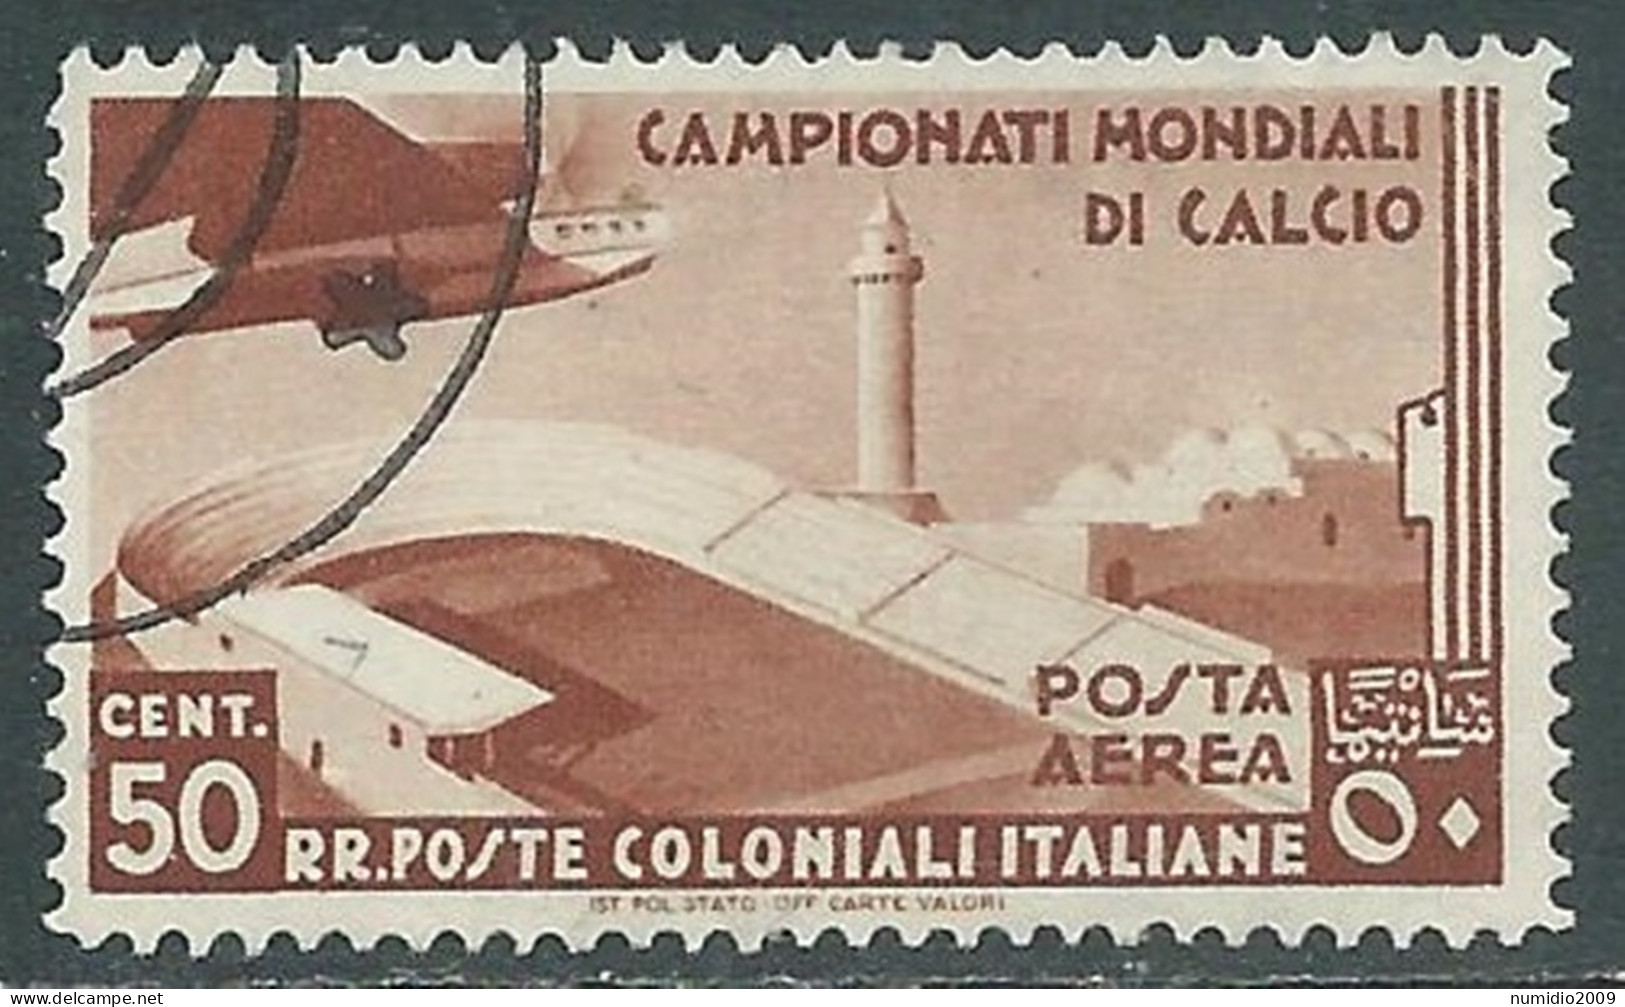 1934 EMISSIONI GENERALI POSTA AEREA USATO MONDIALI DI CALCIO 50 CENT - RA6-3 - General Issues